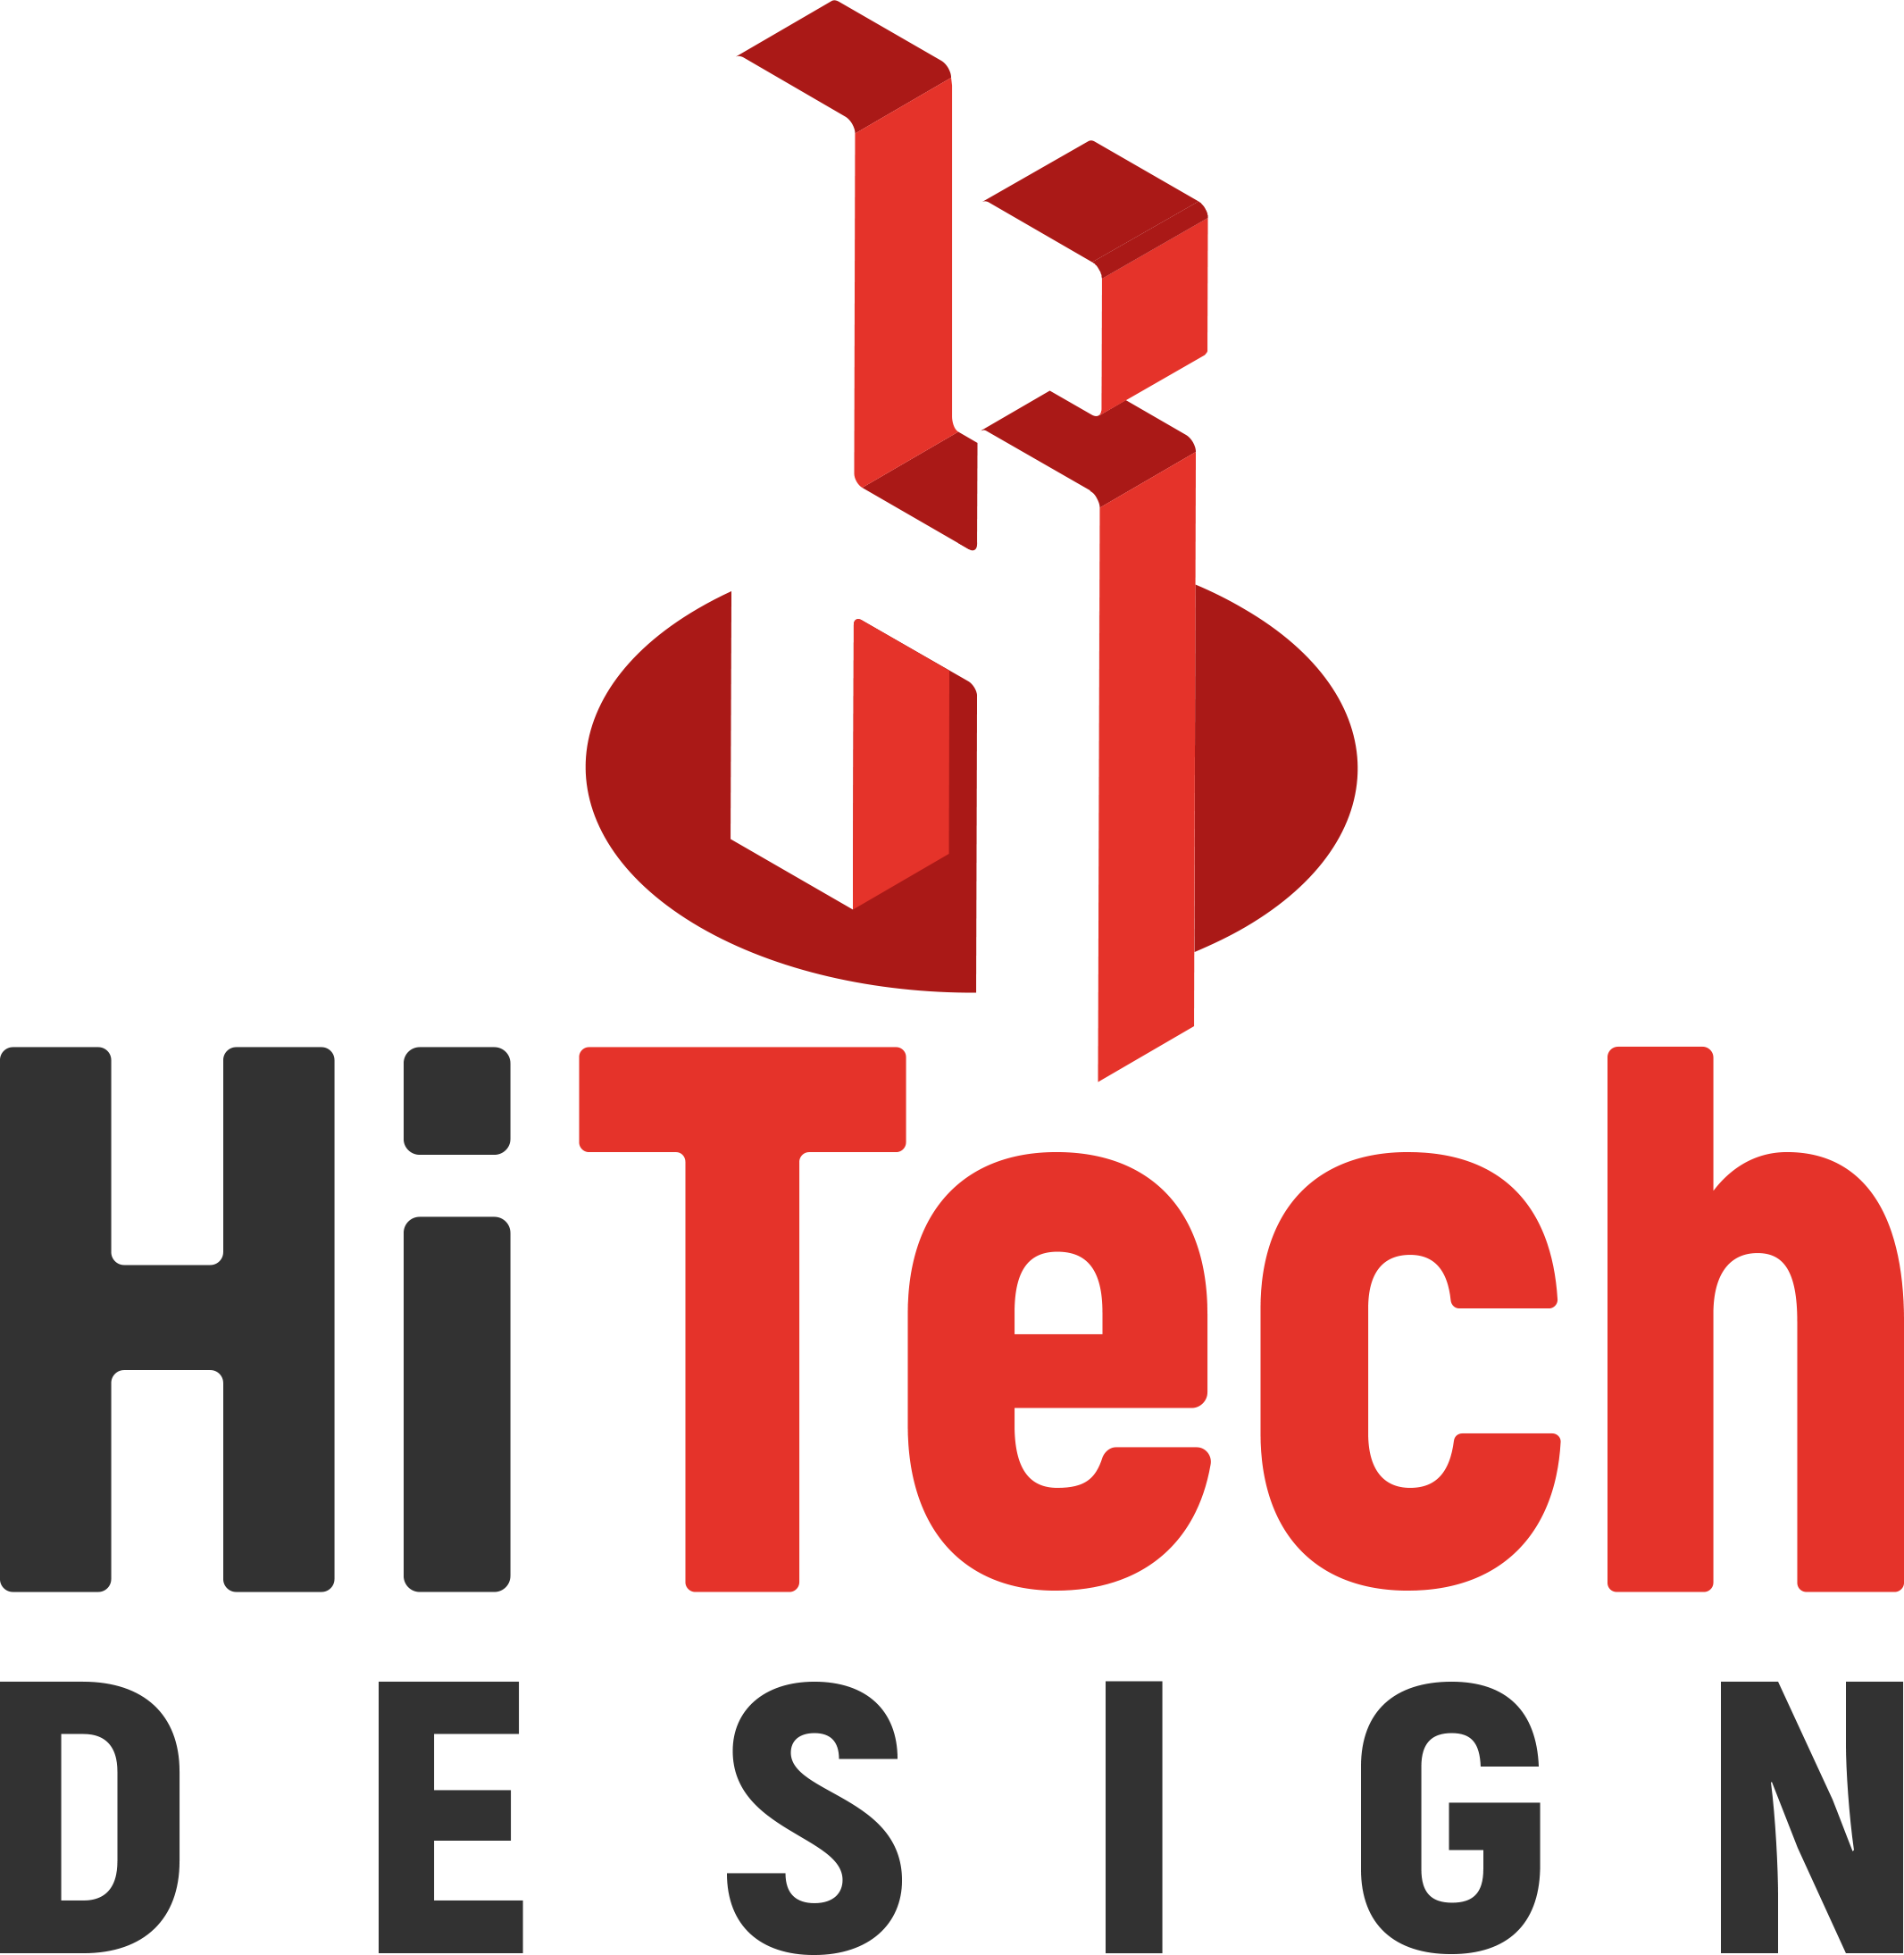 Hi-Techdesign